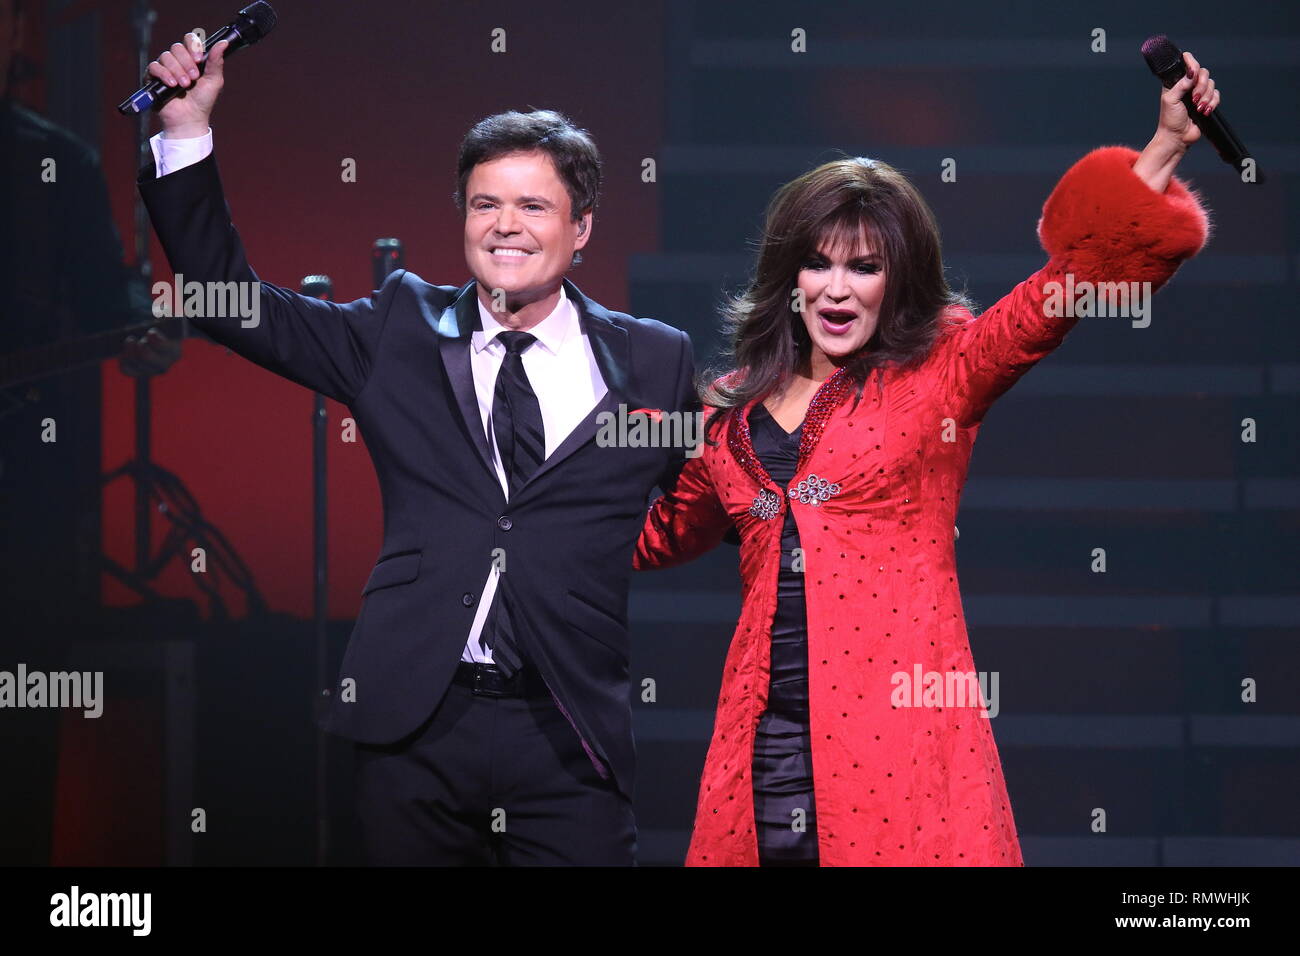 Entertainers Donny et Marie Osmond sont présentés sur scène pendant un concert de 'live' show. Banque D'Images